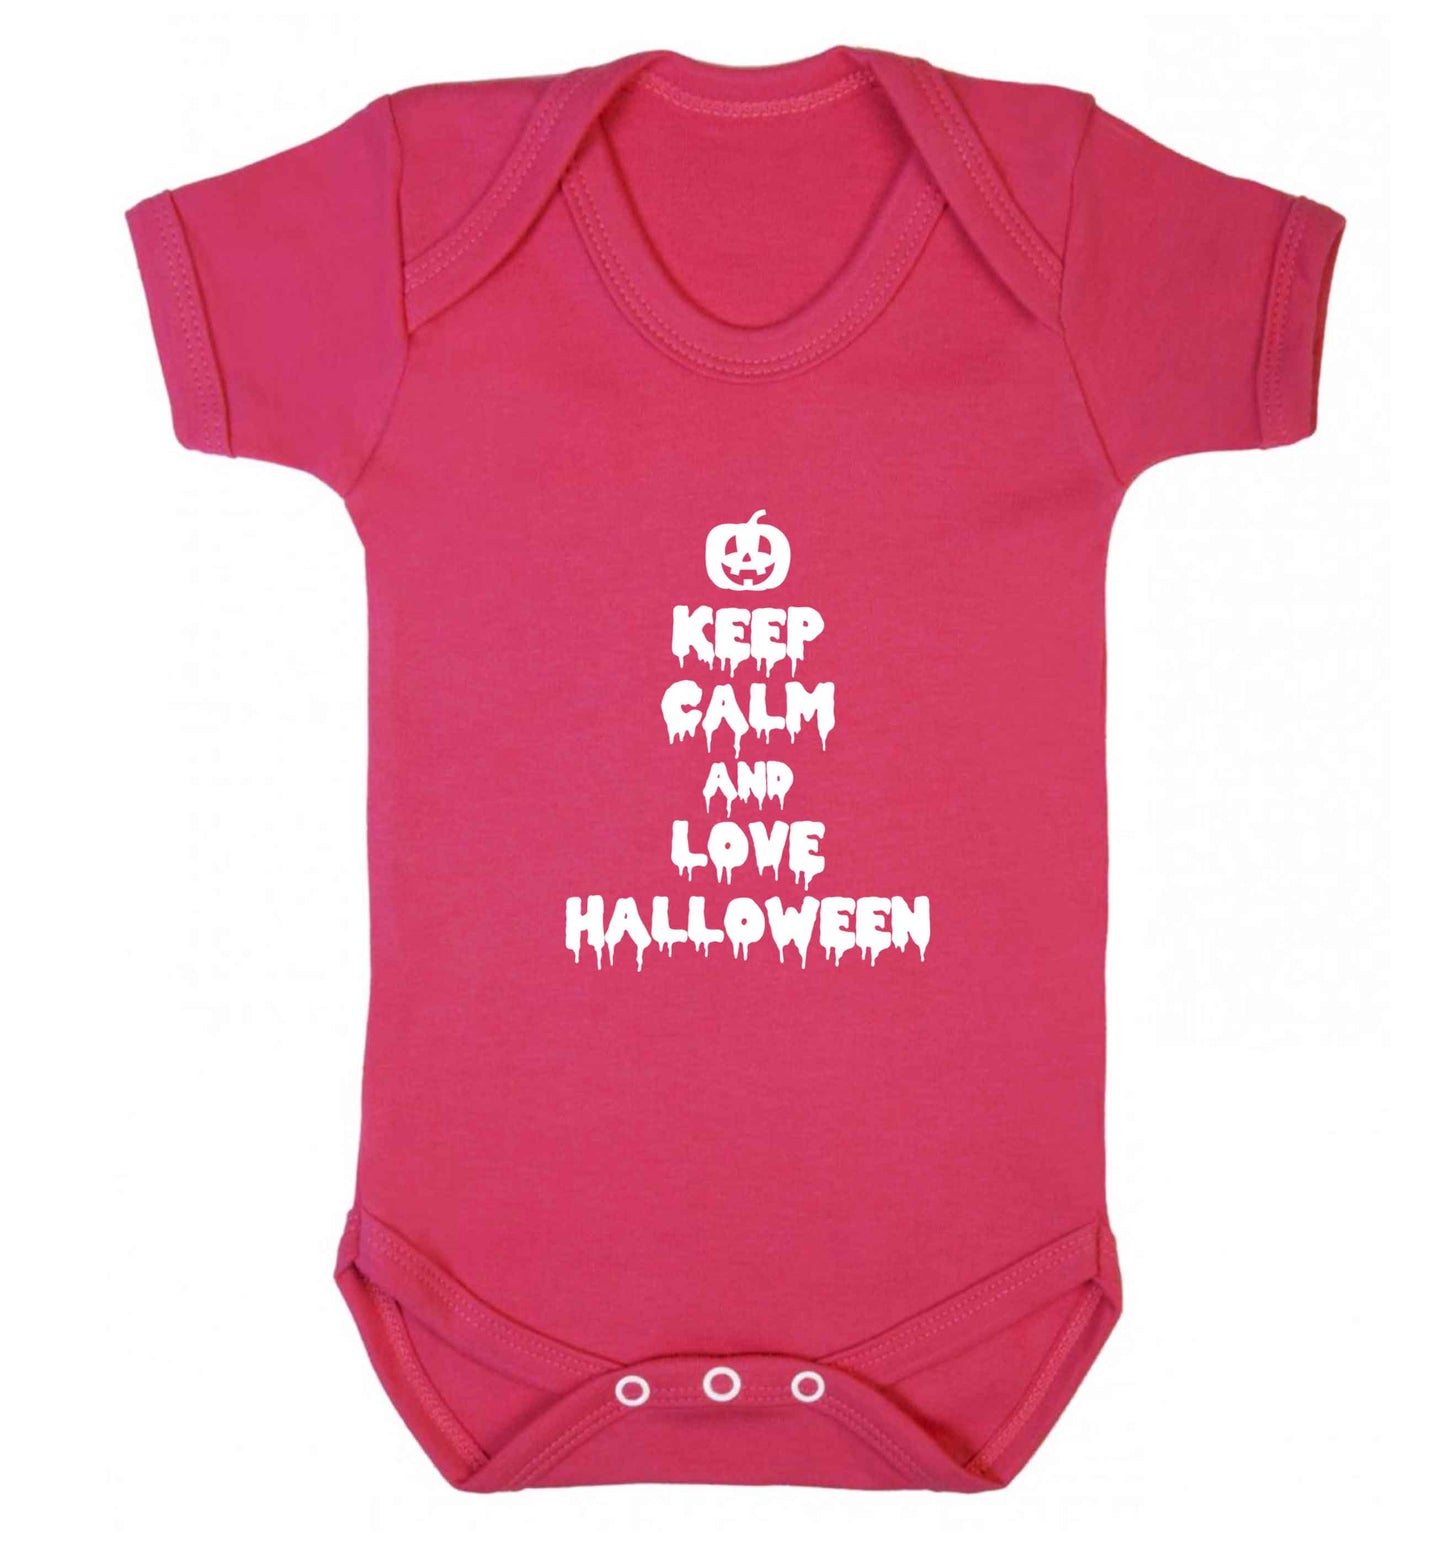 Keep calm and love halloween baby vest dark pink 18-24 months